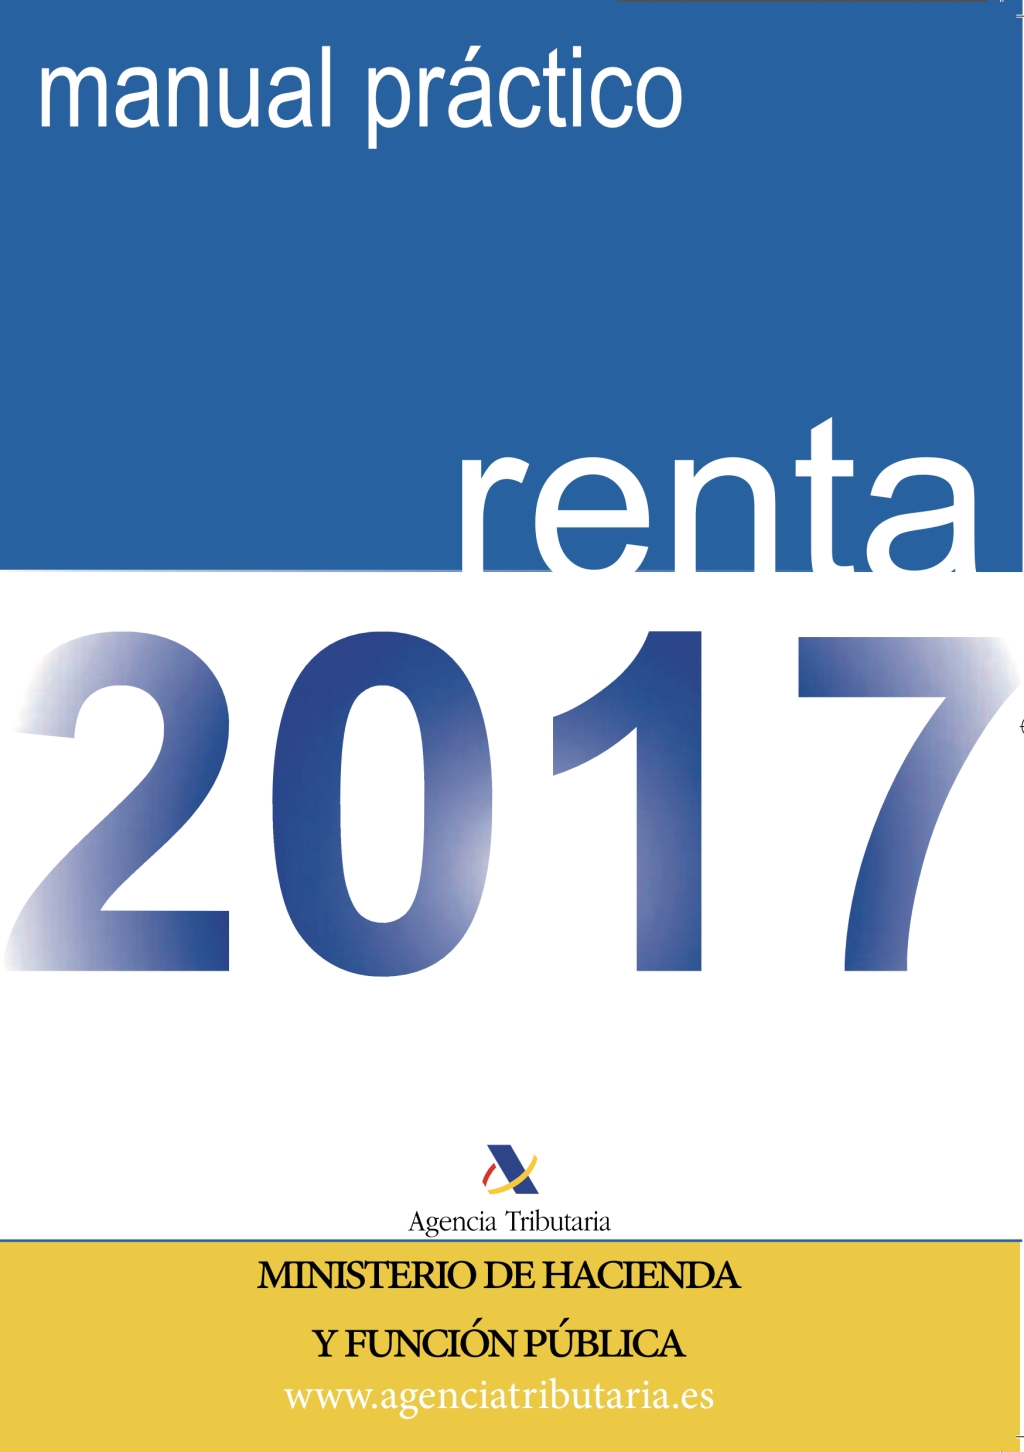 Manual práctico Renta 2017